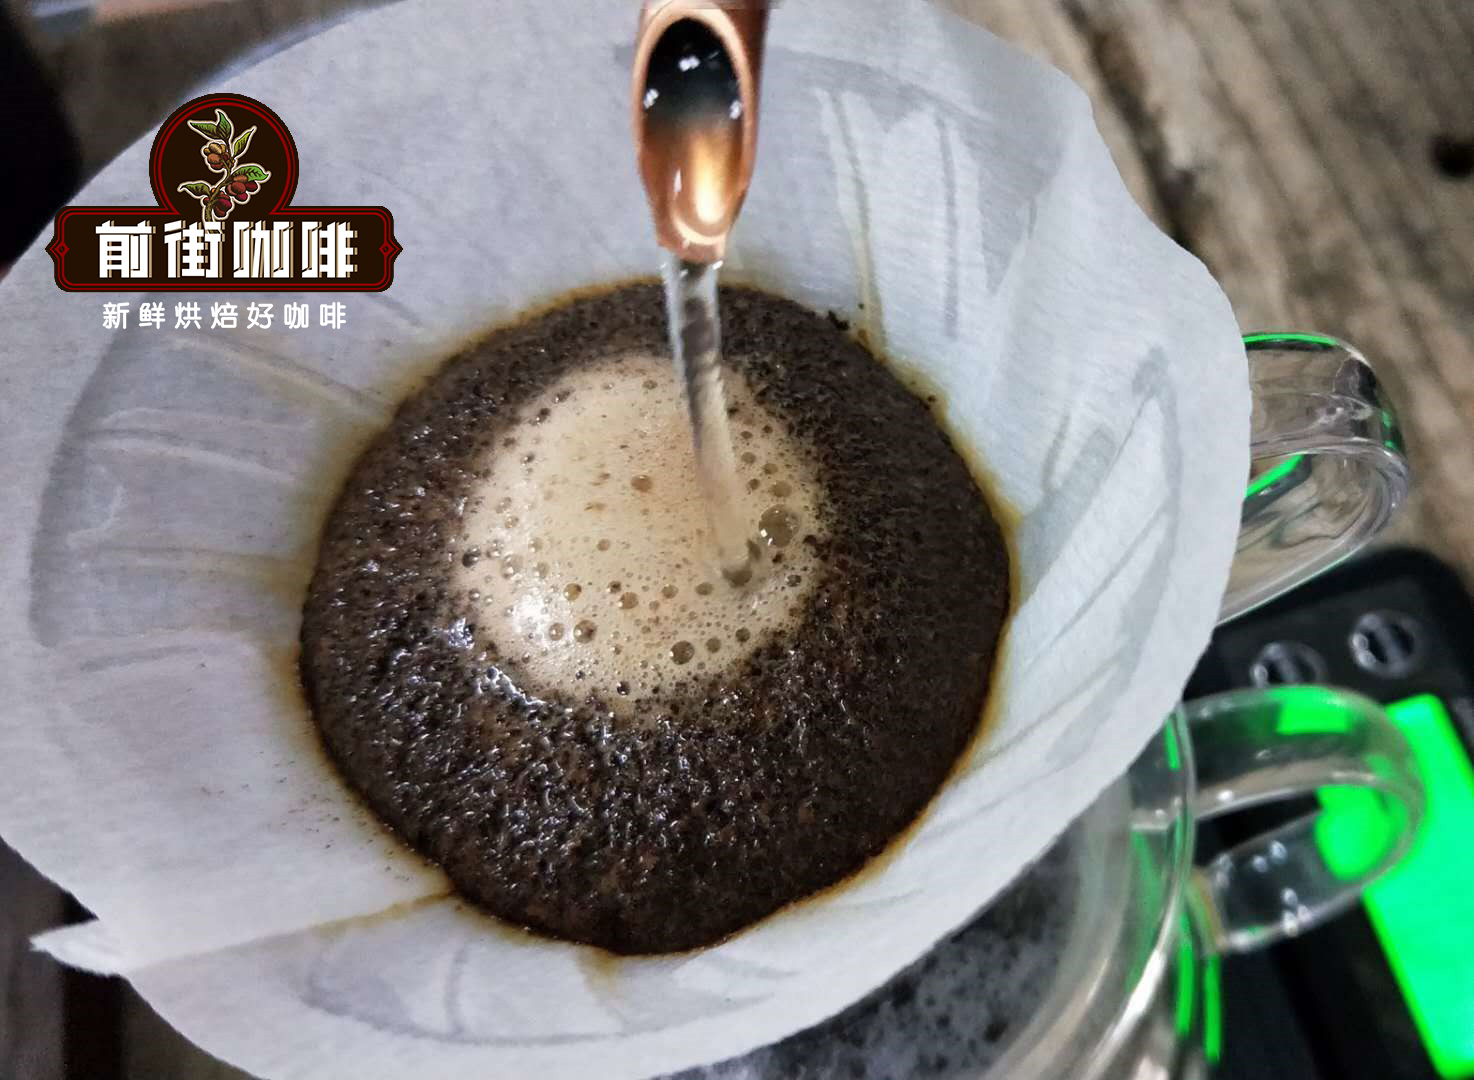 咖啡粉越細咖啡風味就越濃嗎 咖啡粉的粗細會影響咖啡萃取的風味嗎